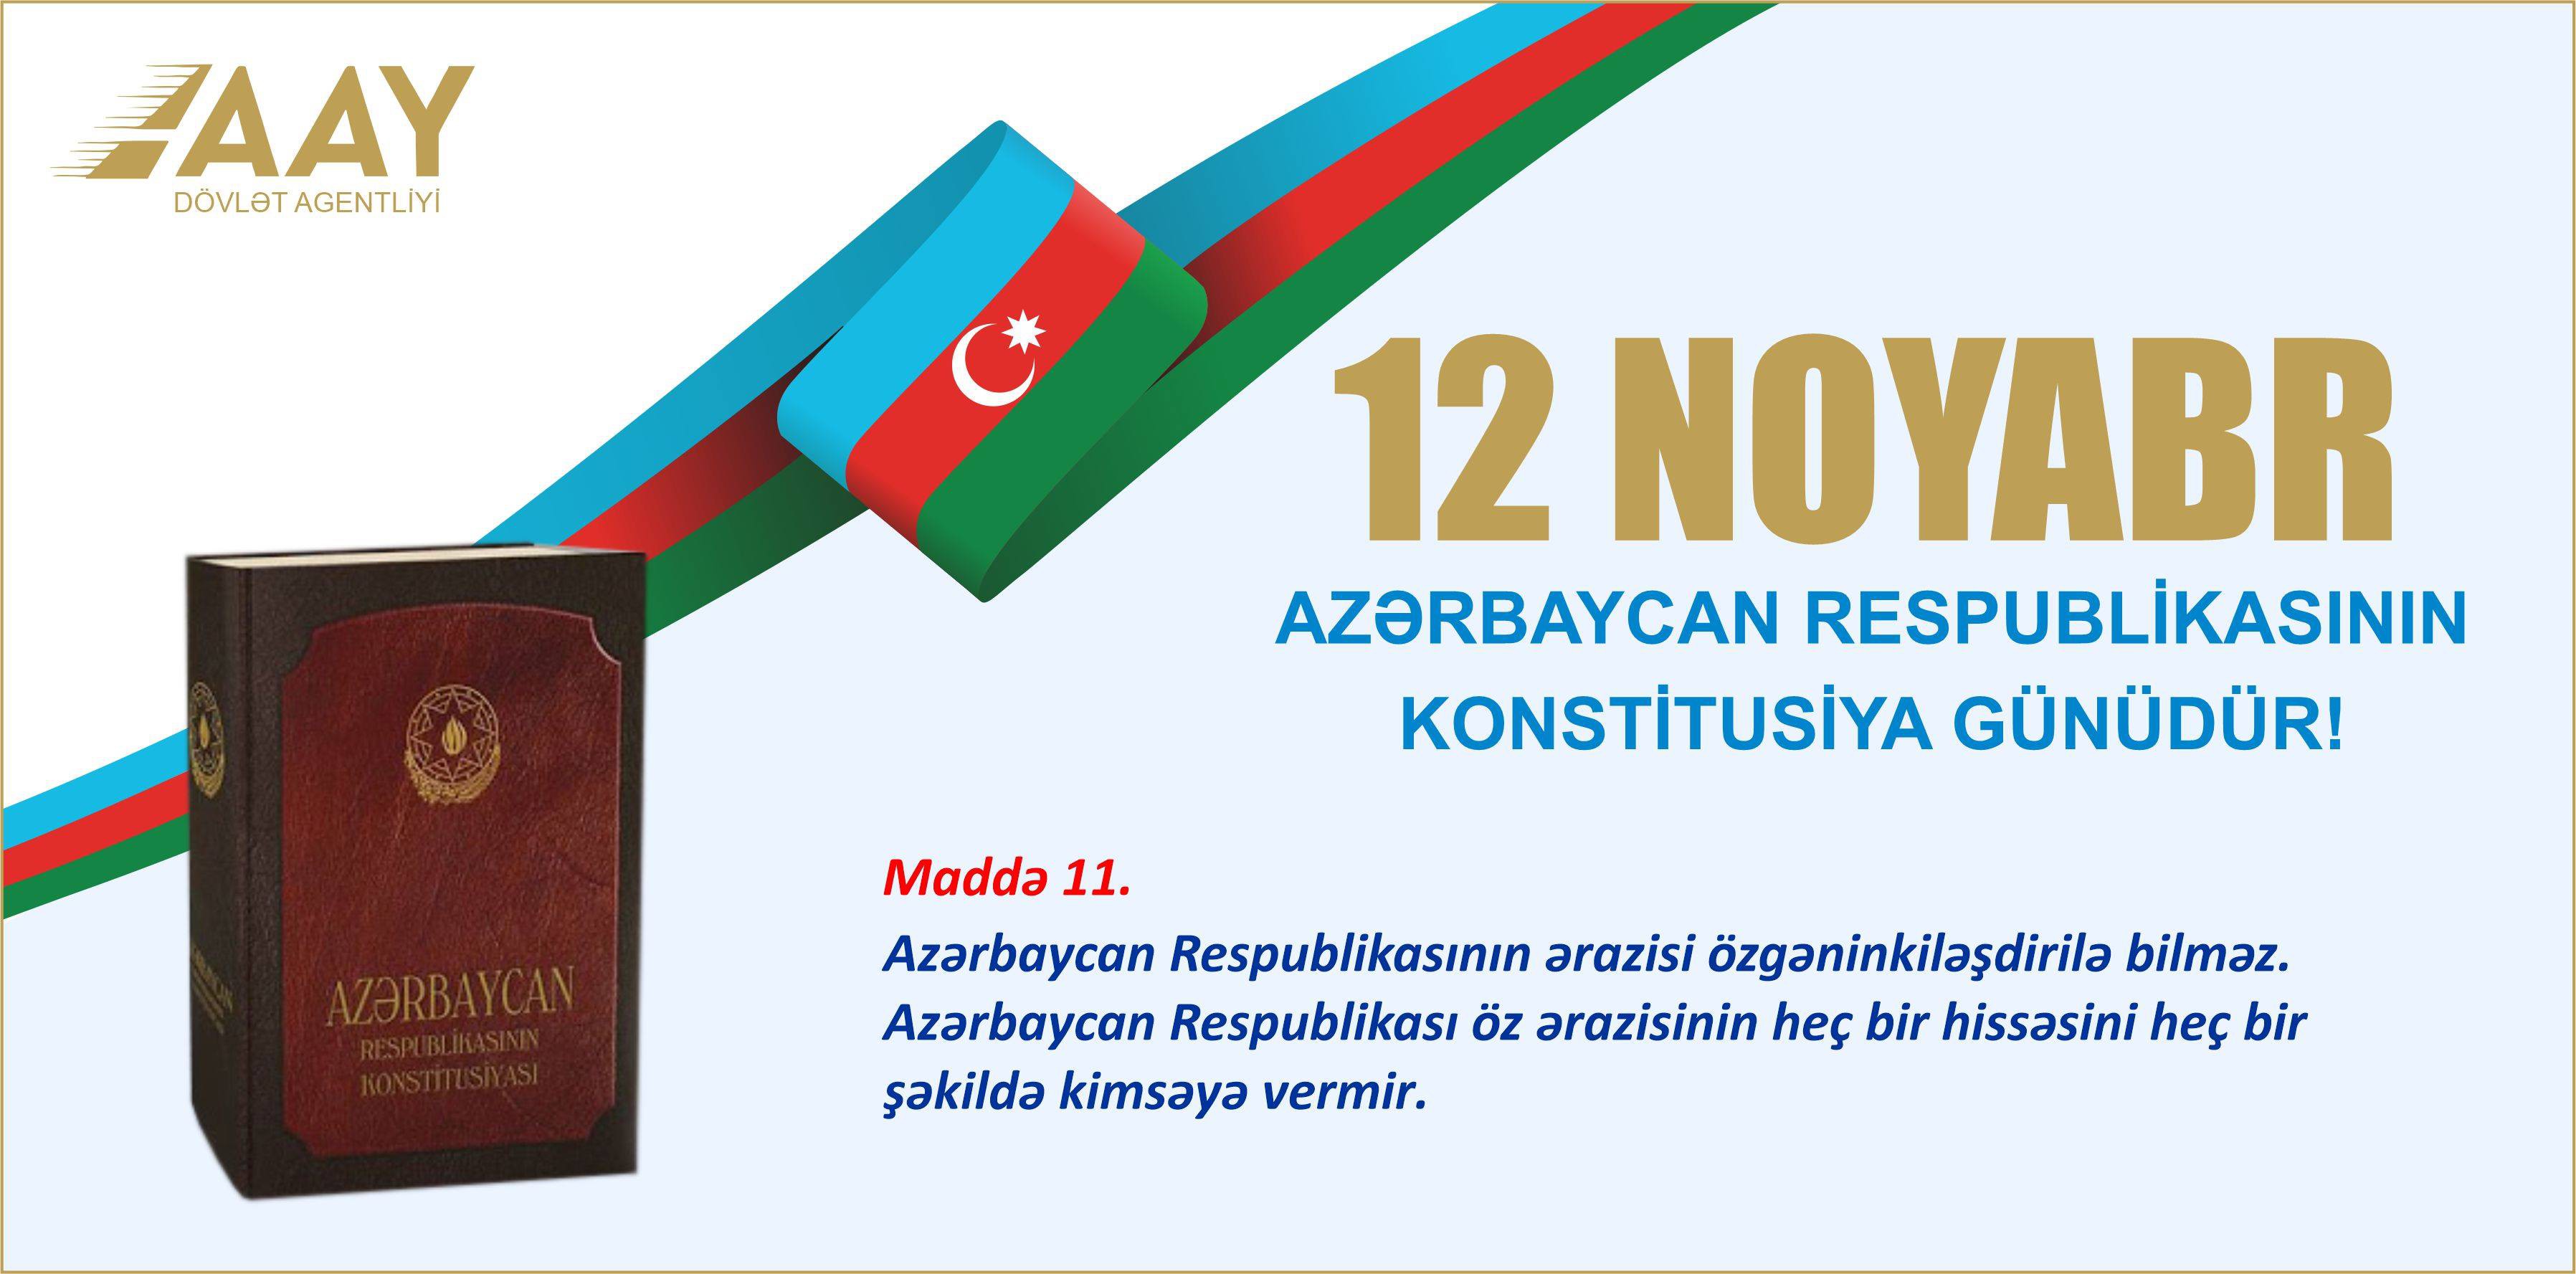 11 12 noyabr - Azərbaycan Respublikasının Konstitusiya Günüdür